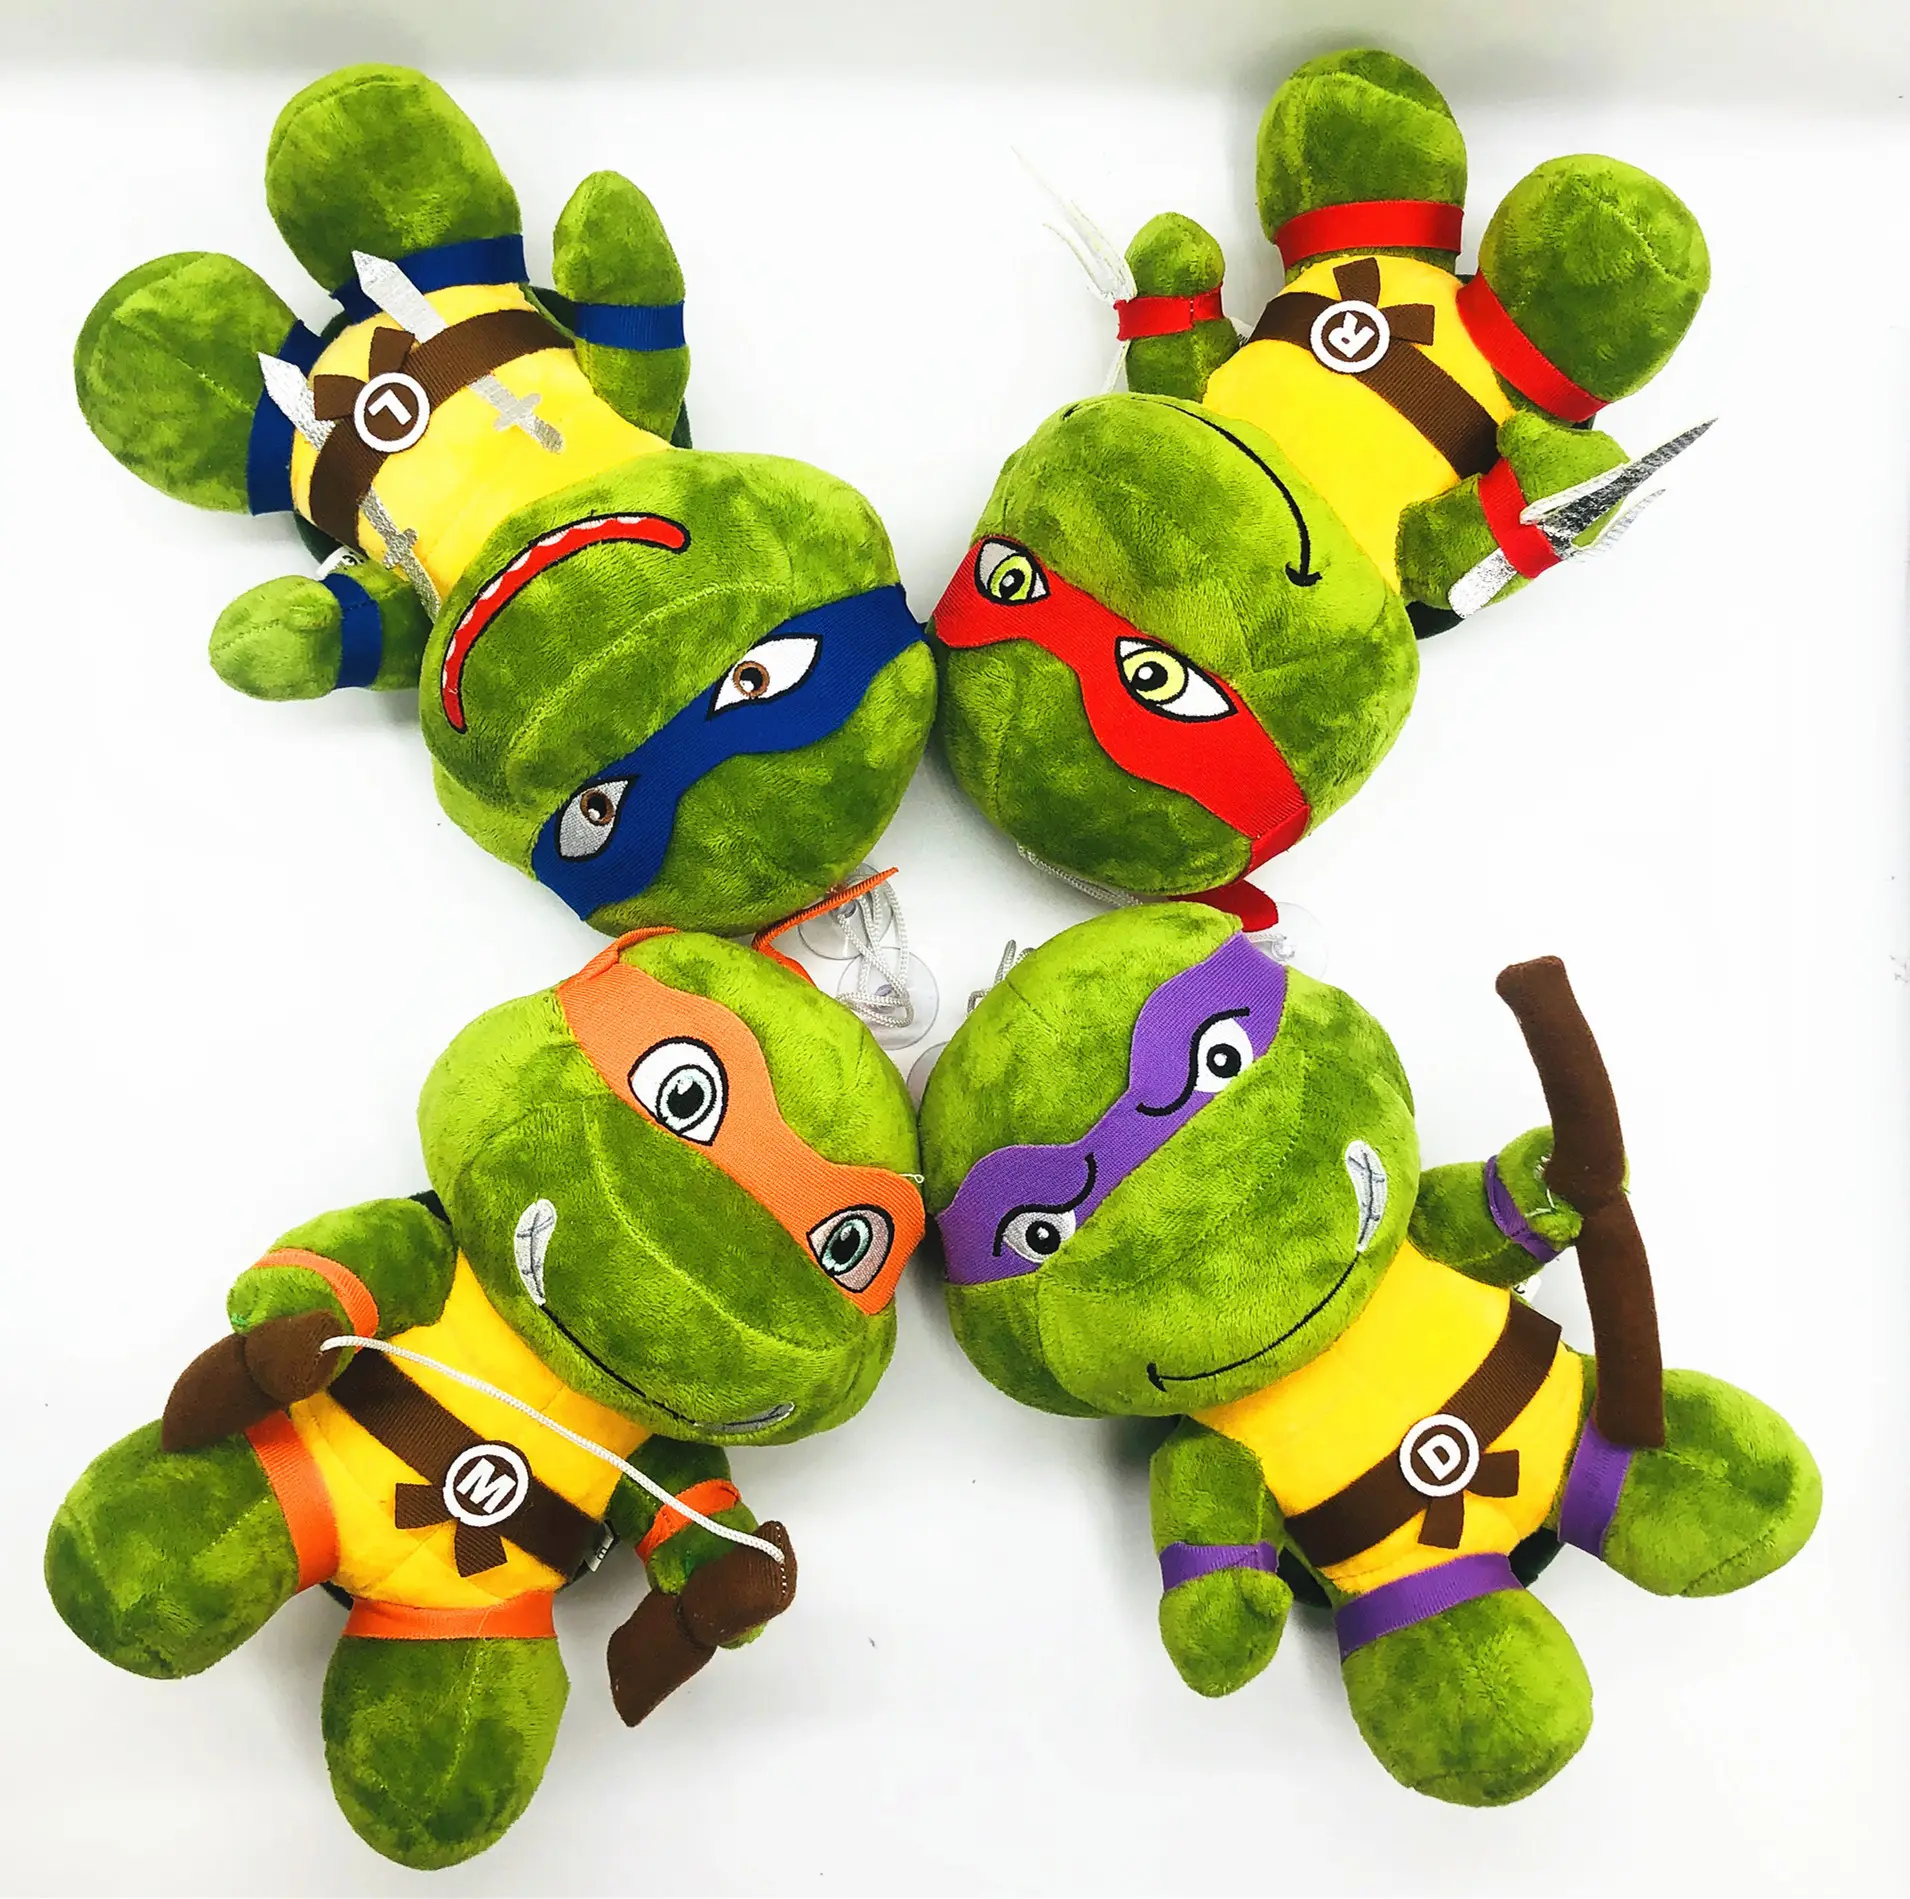 Runjoy personnalisé anime tortues en peluche poupées ninja figure mignon doux en peluche promotion cadeaux modèle tortues jouets en peluche pour griffe machine